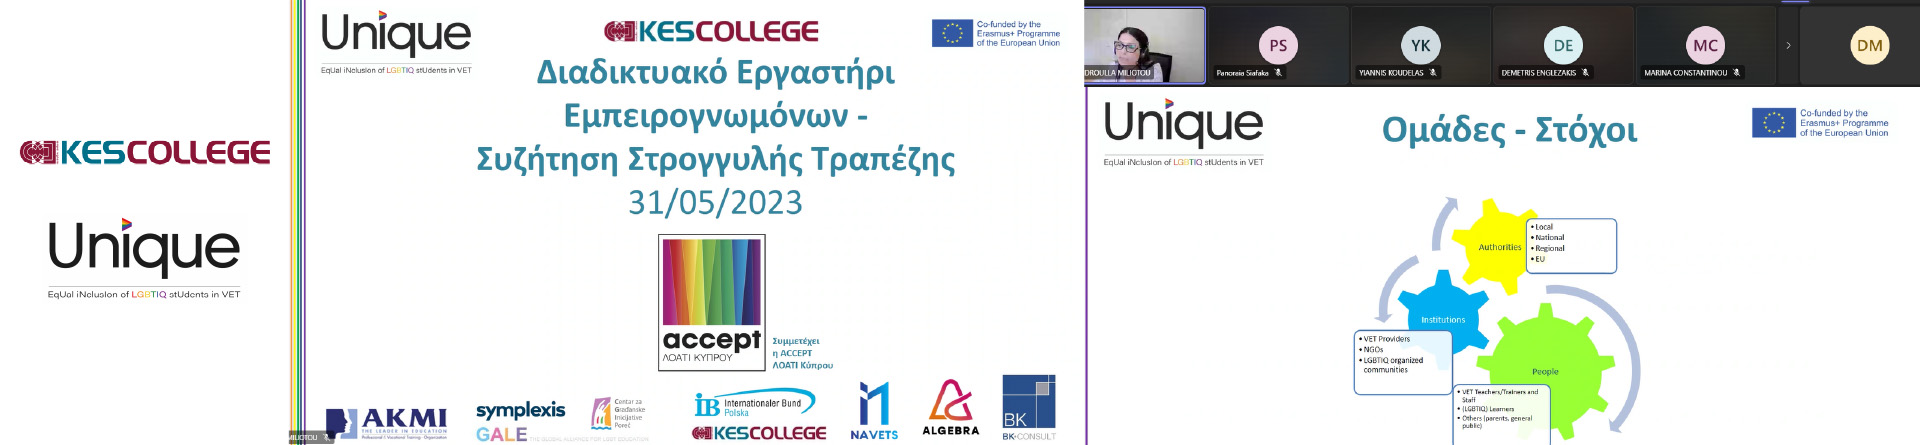 Εργαστήρι Εμπειρογνωμόνων και Συζήτηση Στρογγυλής Τραπέζης από το  KES College στο πλαίσιο του Ευρωπαϊκού Προγράμματος Erasmus+ «UNIQUE - EqUal iNclusIon of LGBTIQ stUdents in VET»